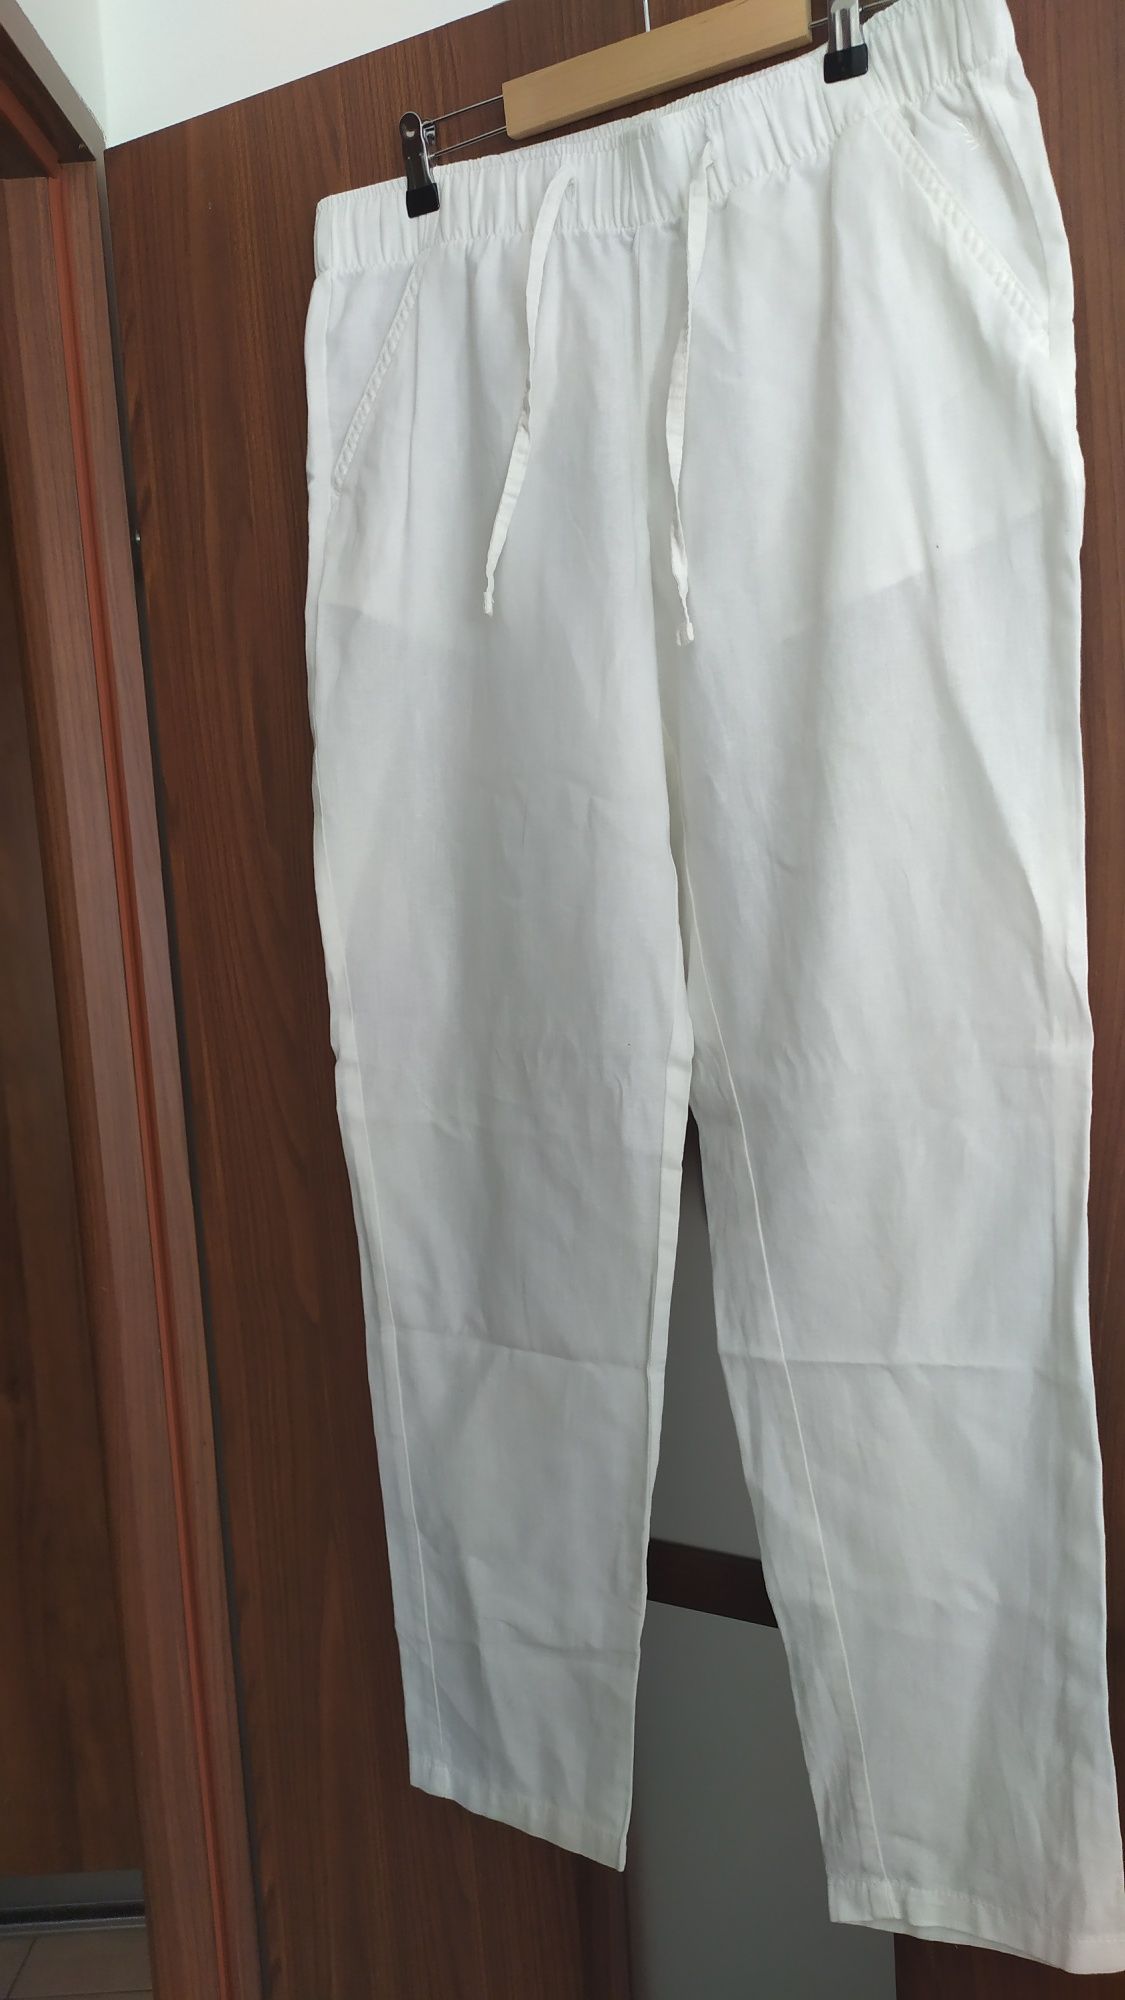 Spodnie z dodatkiem lnu Esmara, 40, białe